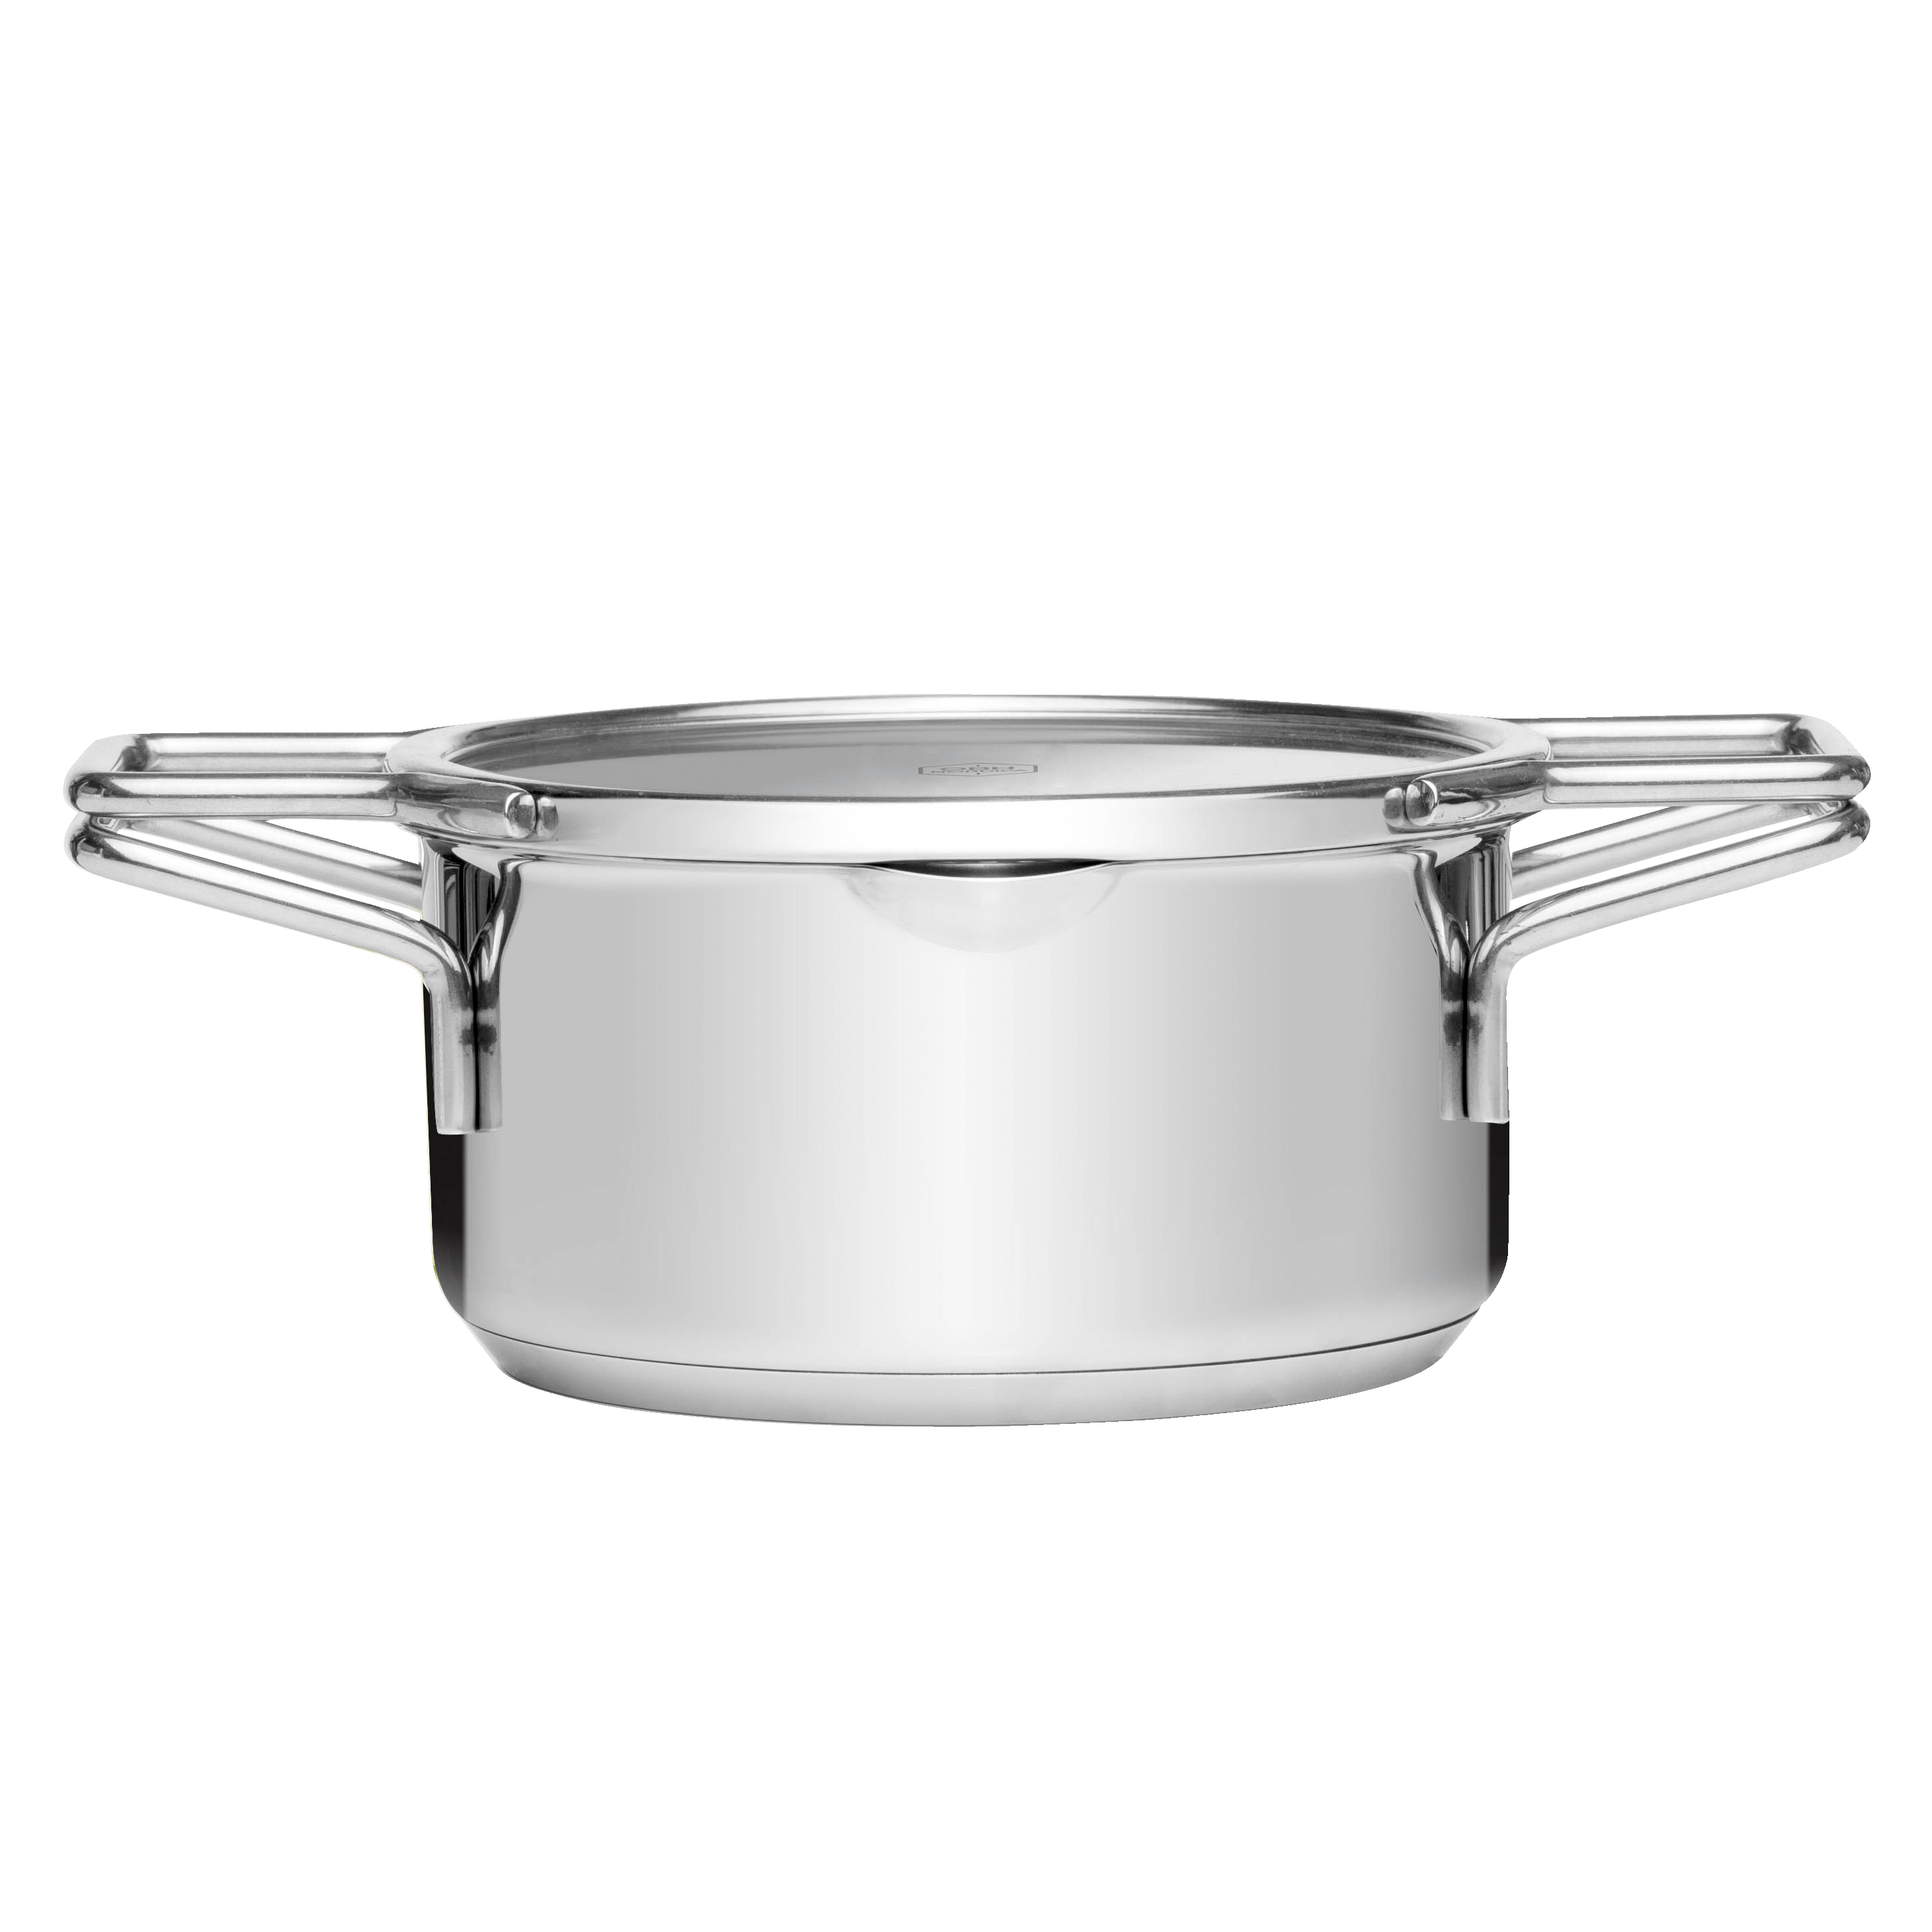 OBH Nordica C-Smart kasserolle 8101 - Køkkenredskaber - Elgiganten